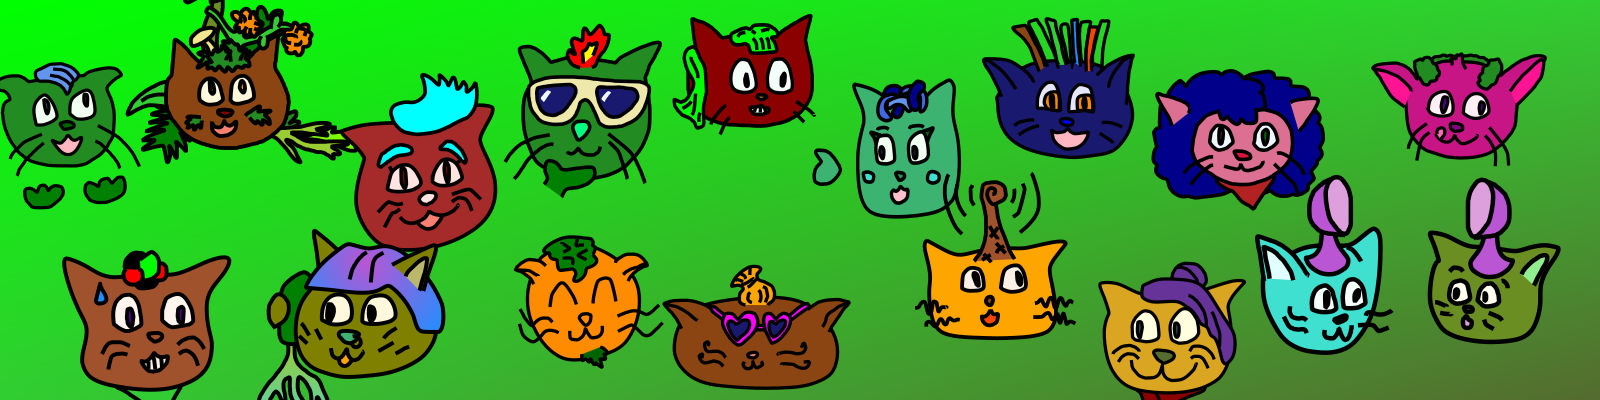 ilustración de personajes diverses con apariencia felina